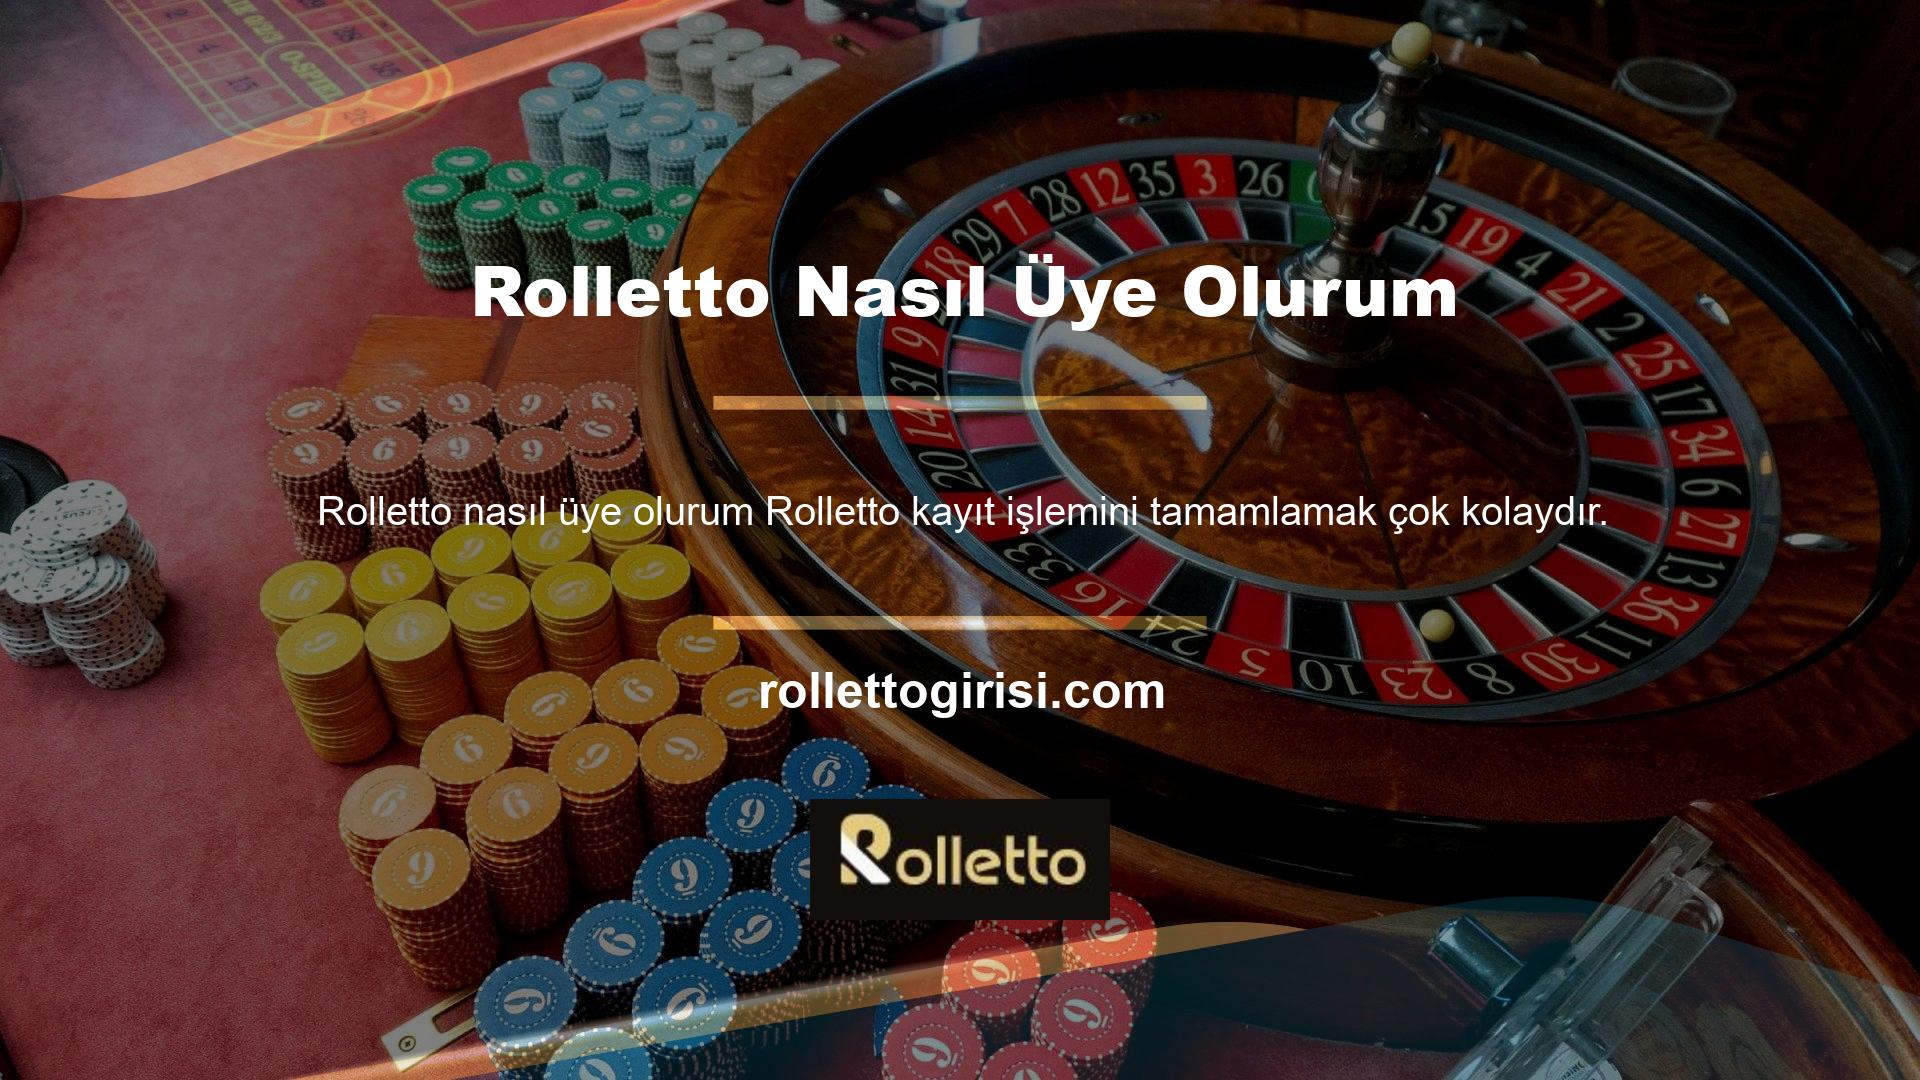 Yeni ve yenilenen Rolletto erişim adreslerinin kapasitesi dolduğunda karşınıza Register butonu çıkacaktır